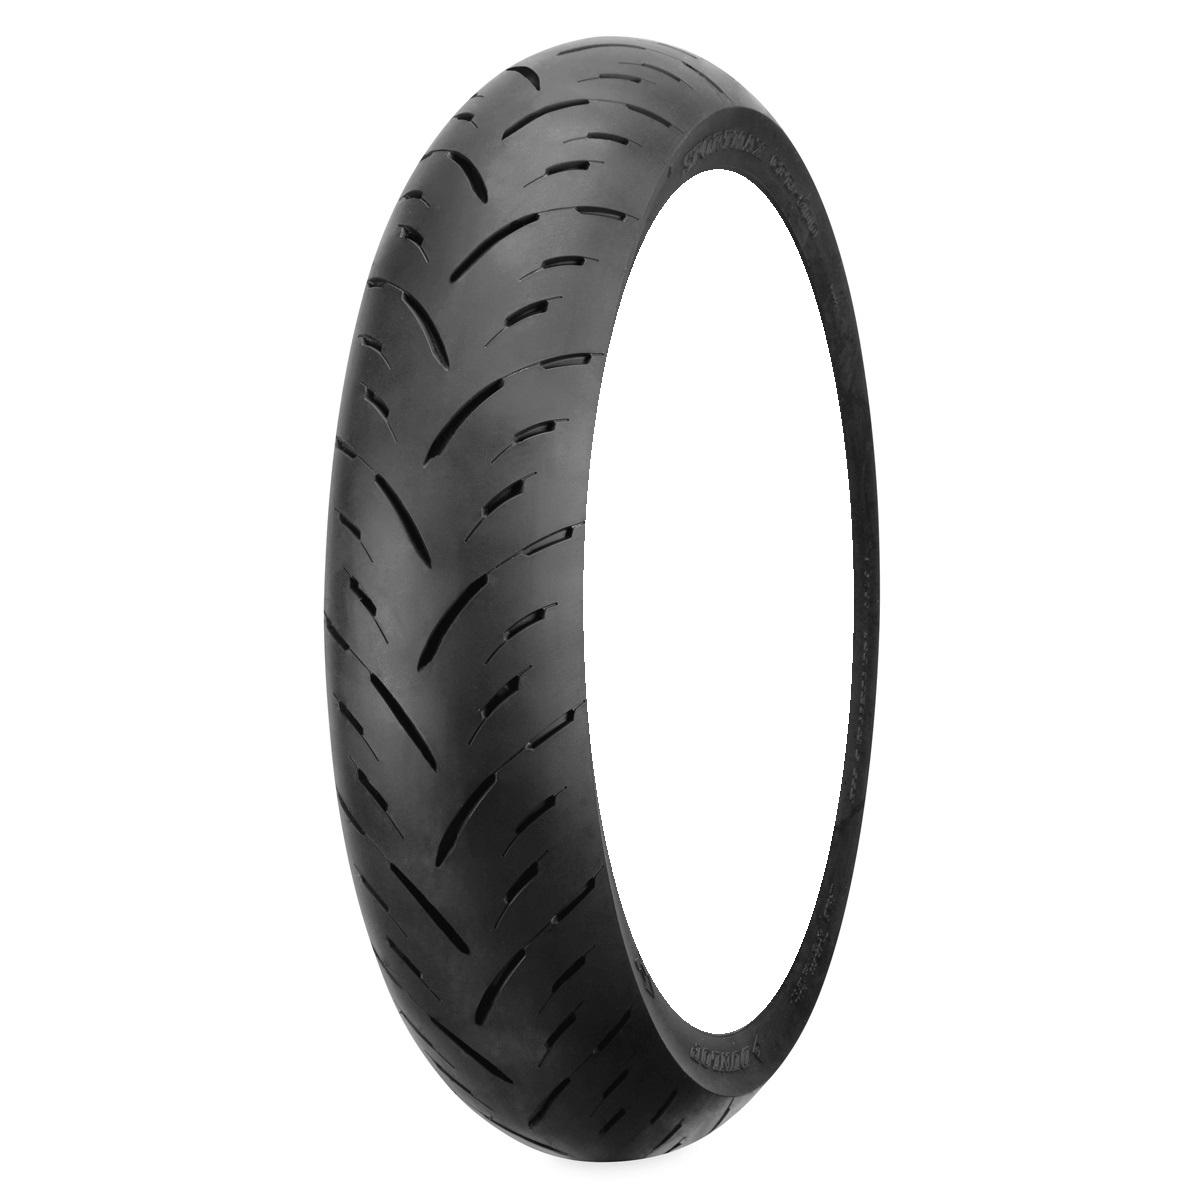 Dunlop Gpr-300 Sportmax 140/70R17 Rear Motorcycle Street Tire